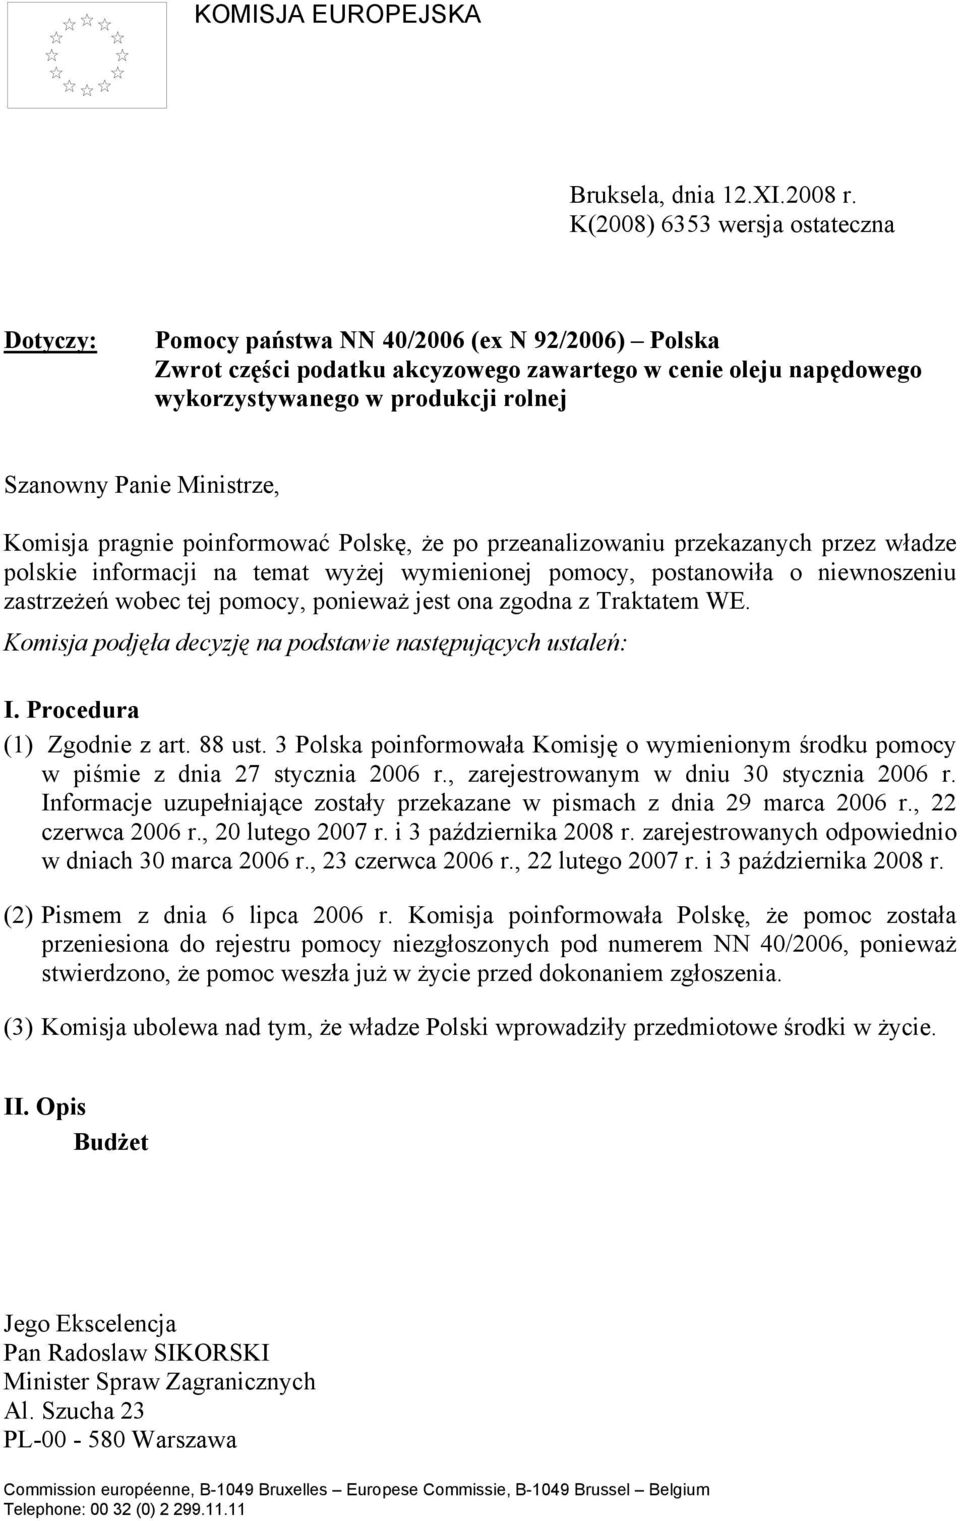 Panie Ministrze, Komisja pragnie poinformować Polskę, że po przeanalizowaniu przekazanych przez władze polskie informacji na temat wyżej wymienionej pomocy, postanowiła o niewnoszeniu zastrzeżeń